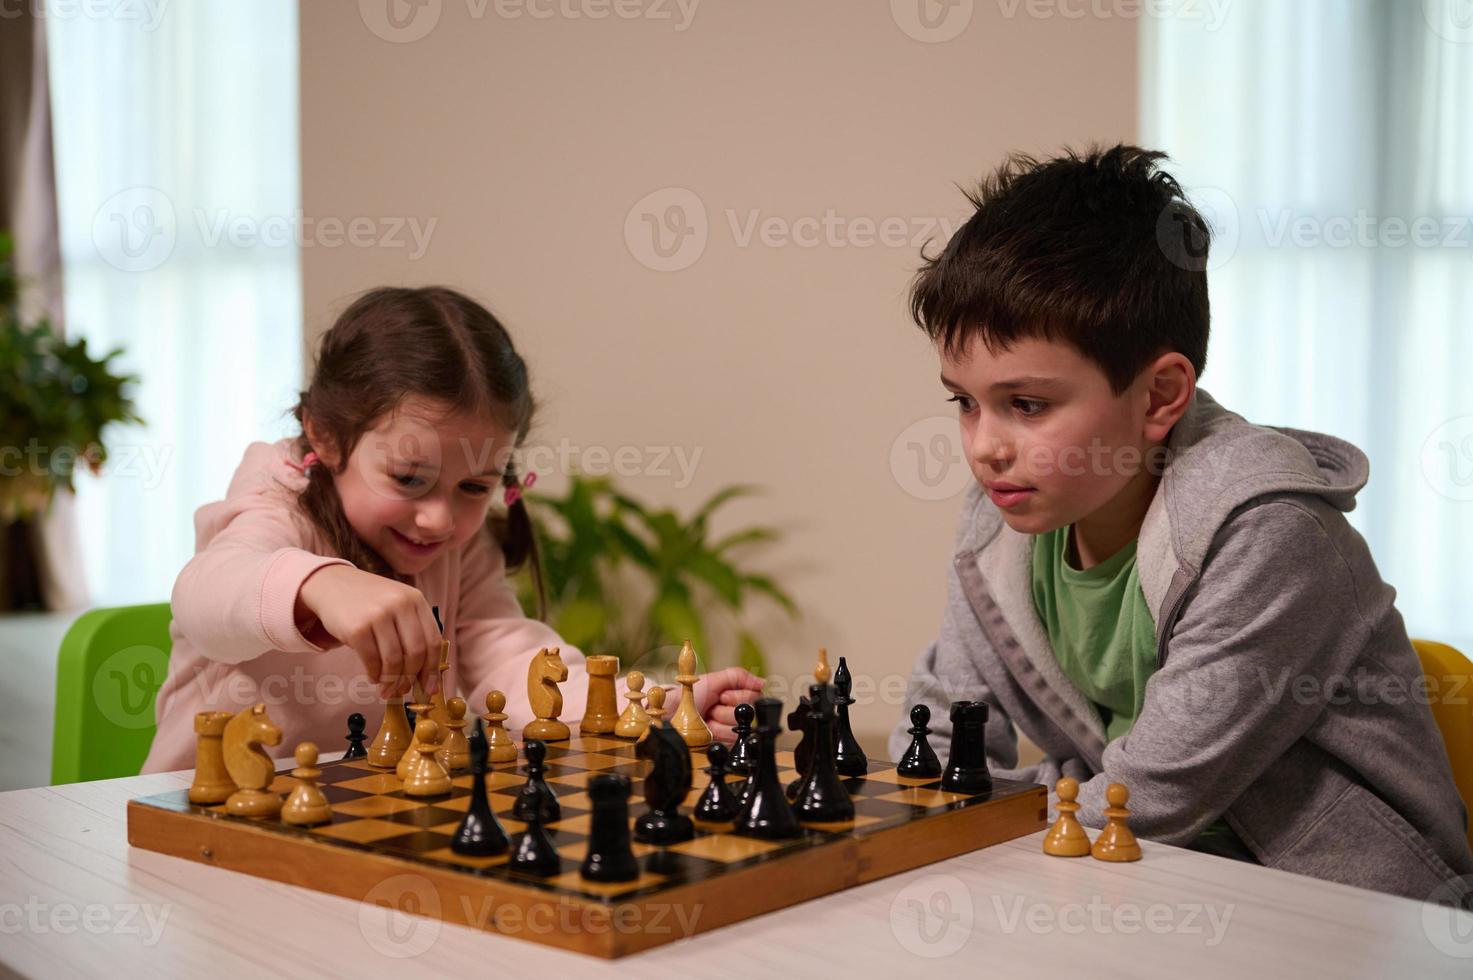 kinderen hebben Super goed tijd samen spelen schaken. broer onderwijs zijn jonger zus spelen schaak spel. logica ontwikkeling, vrije tijd bord spellen, amusement, intelligent hobby en onderwijs concept foto